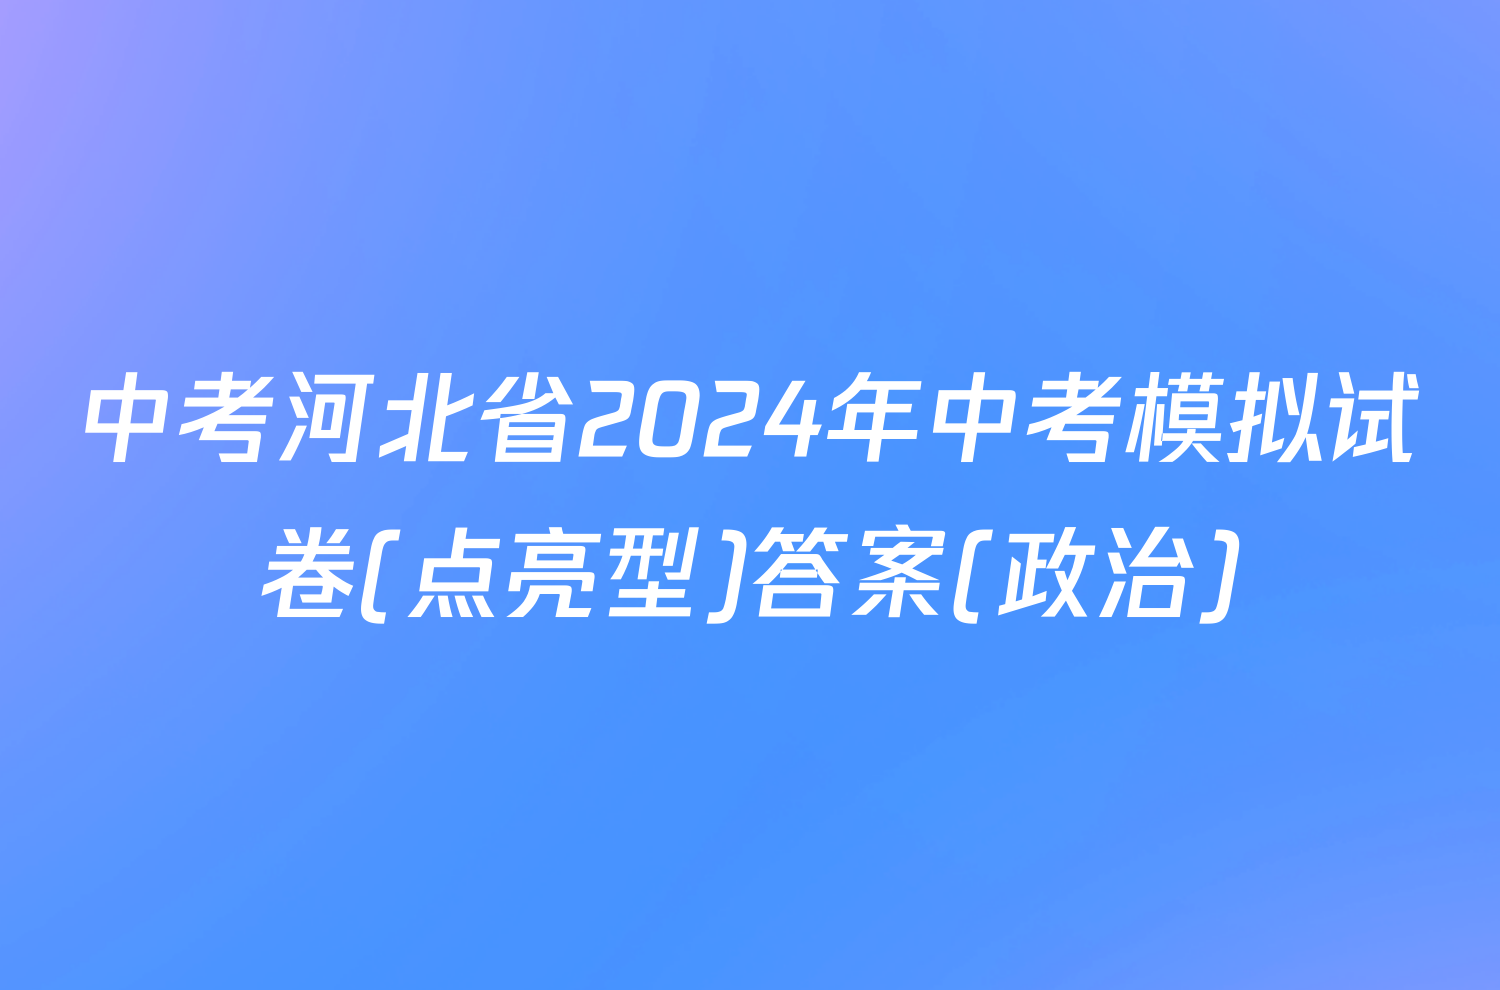 中考河北省2024年中考模拟试卷(点亮型)答案(政治)